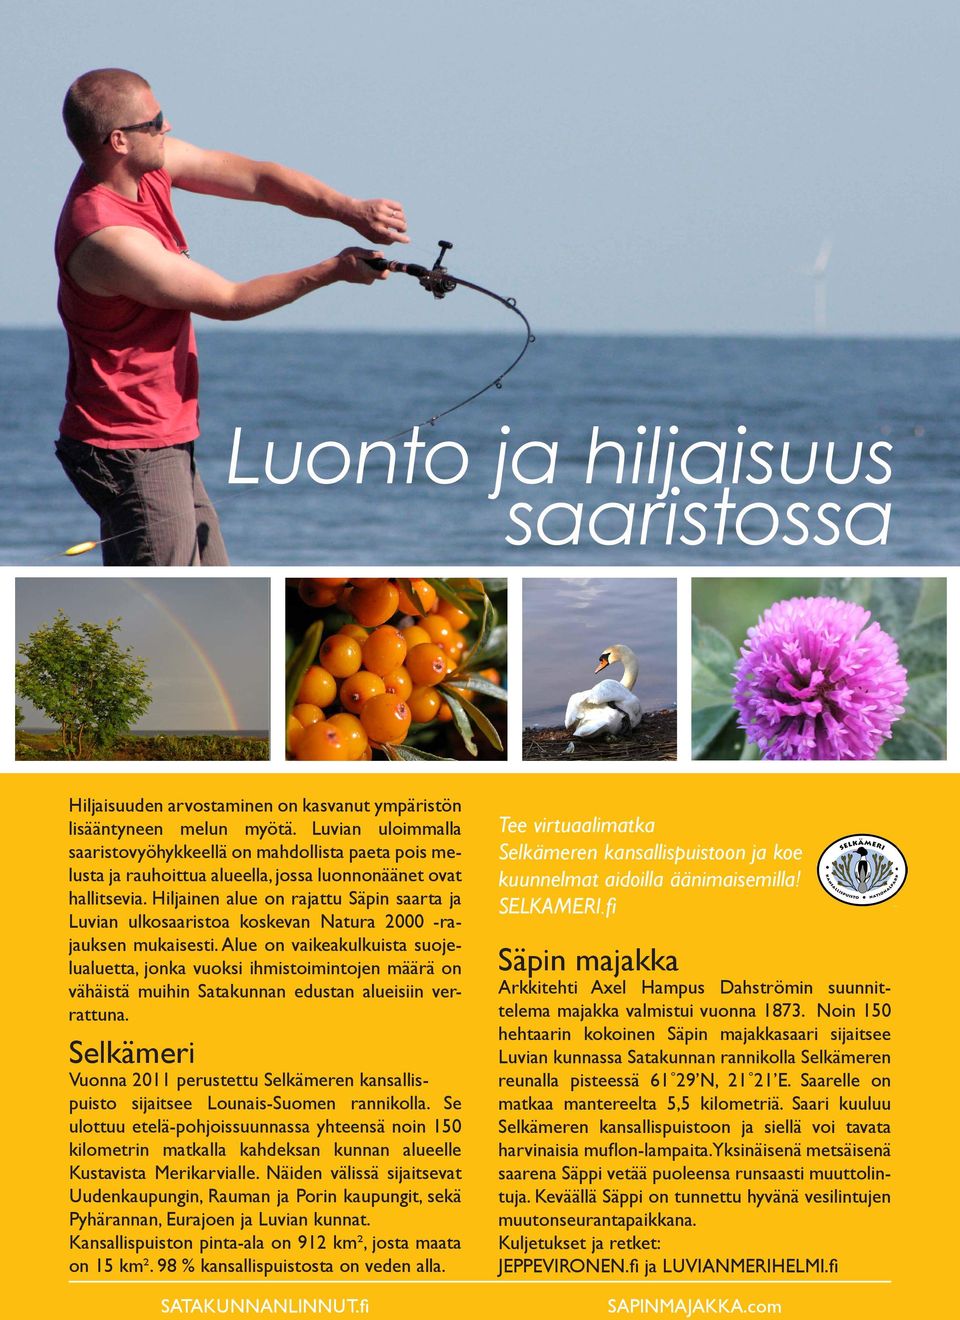 Hiljainen alue on rajattu Säpin saarta ja Luvian ulkosaaristoa koskevan Natura 2000 -rajauksen mukaisesti.